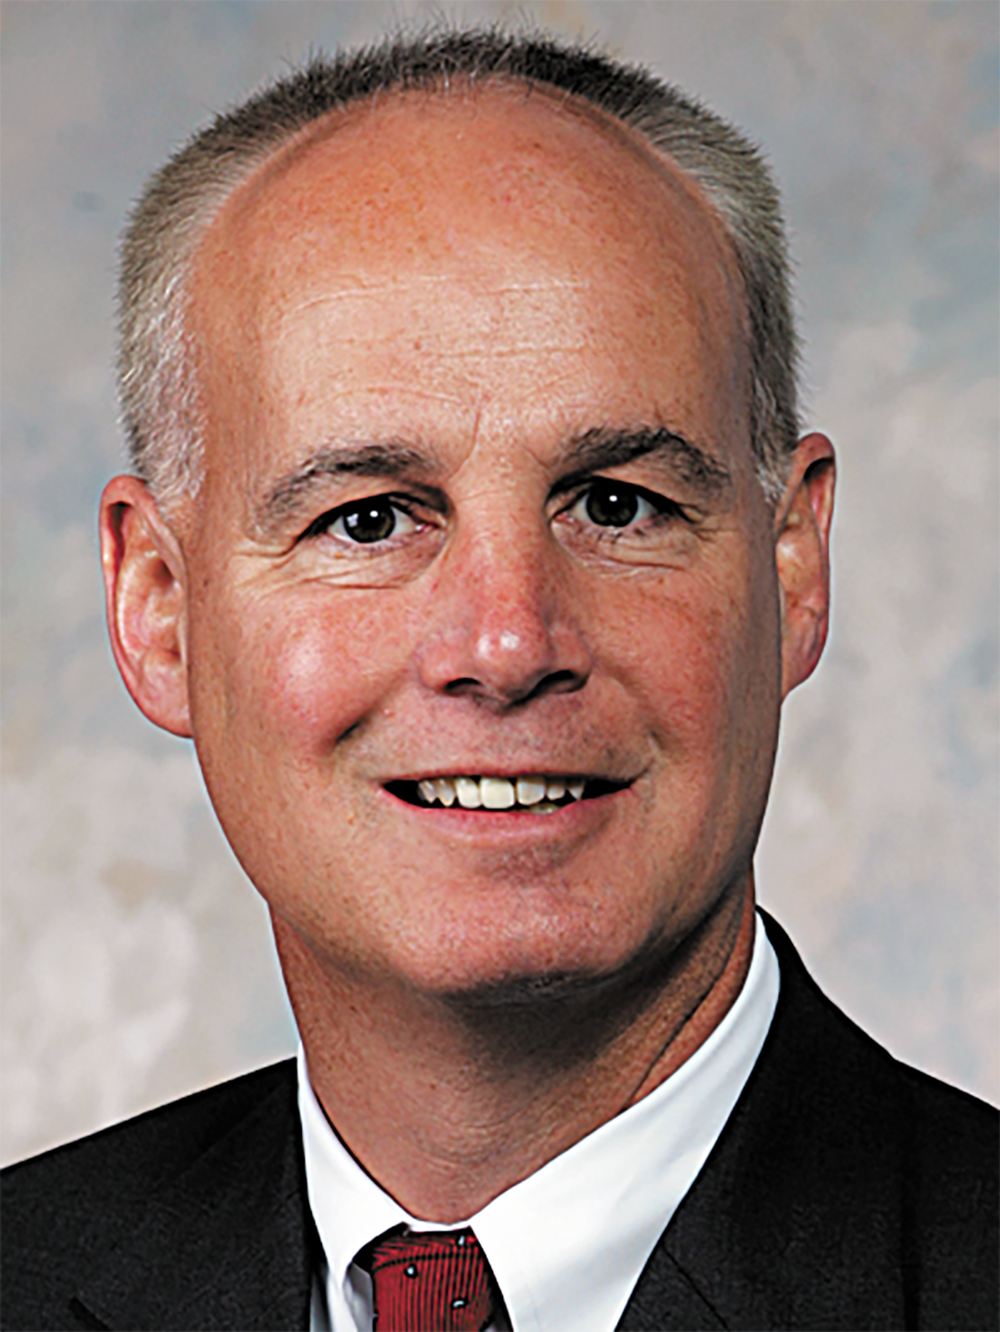 Greg Smith, market president of Jacksonville for Bank of America